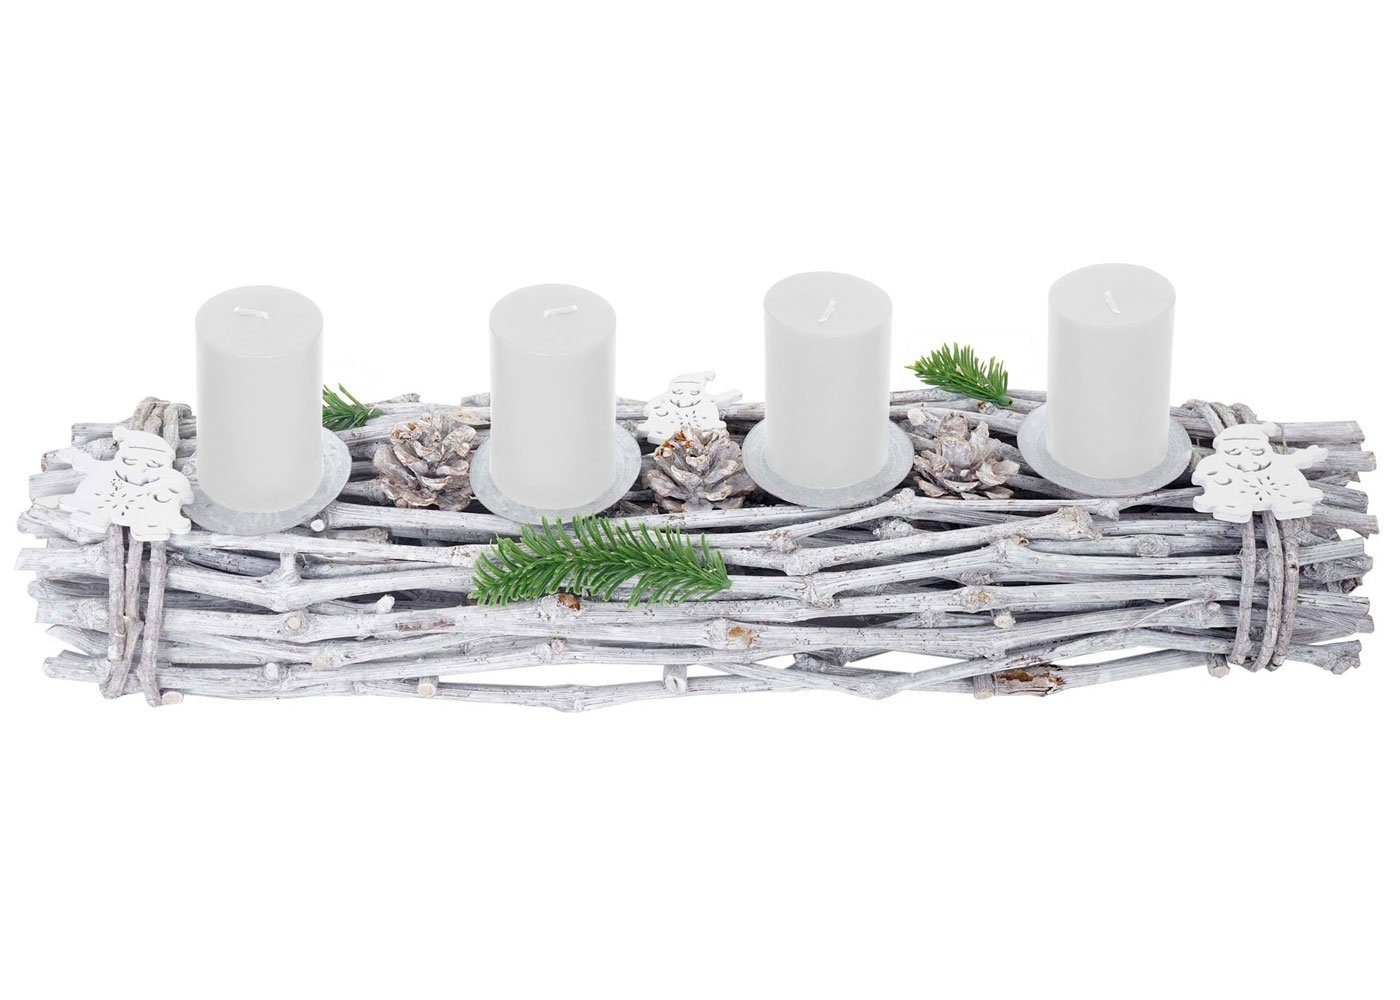 Aufwendig MCW Mit Adventskranz Kerzen 4 weiß, geschmückt T783-L, Kerzenhaltern, weiße